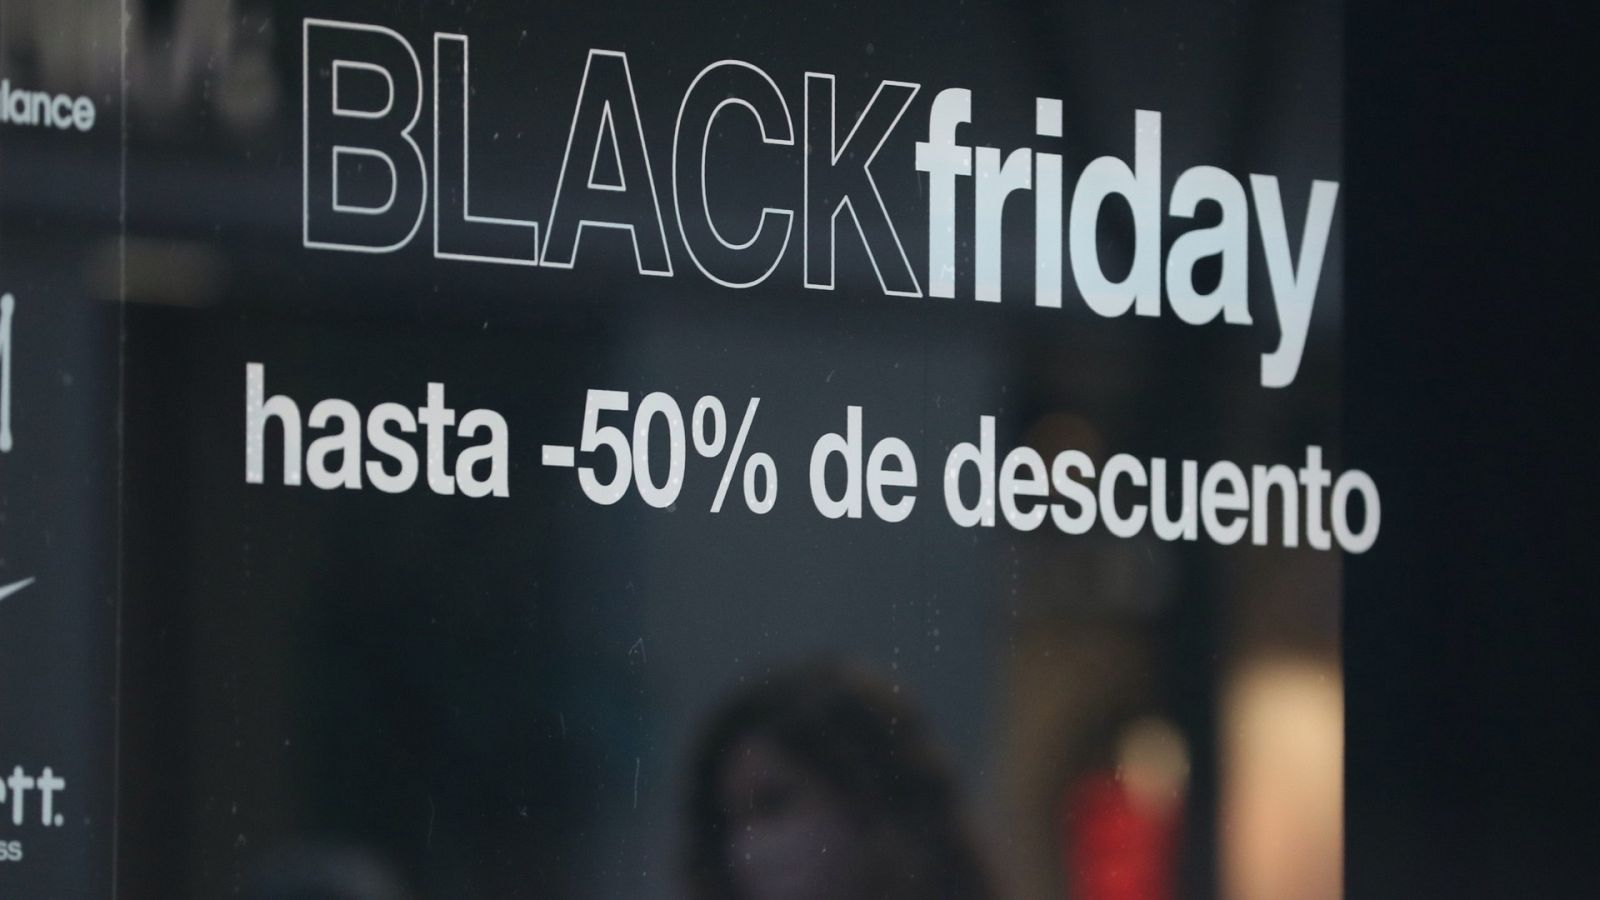 La falta de stock y los descuentos agresivos complican el Black Friday para el pequeño comercio